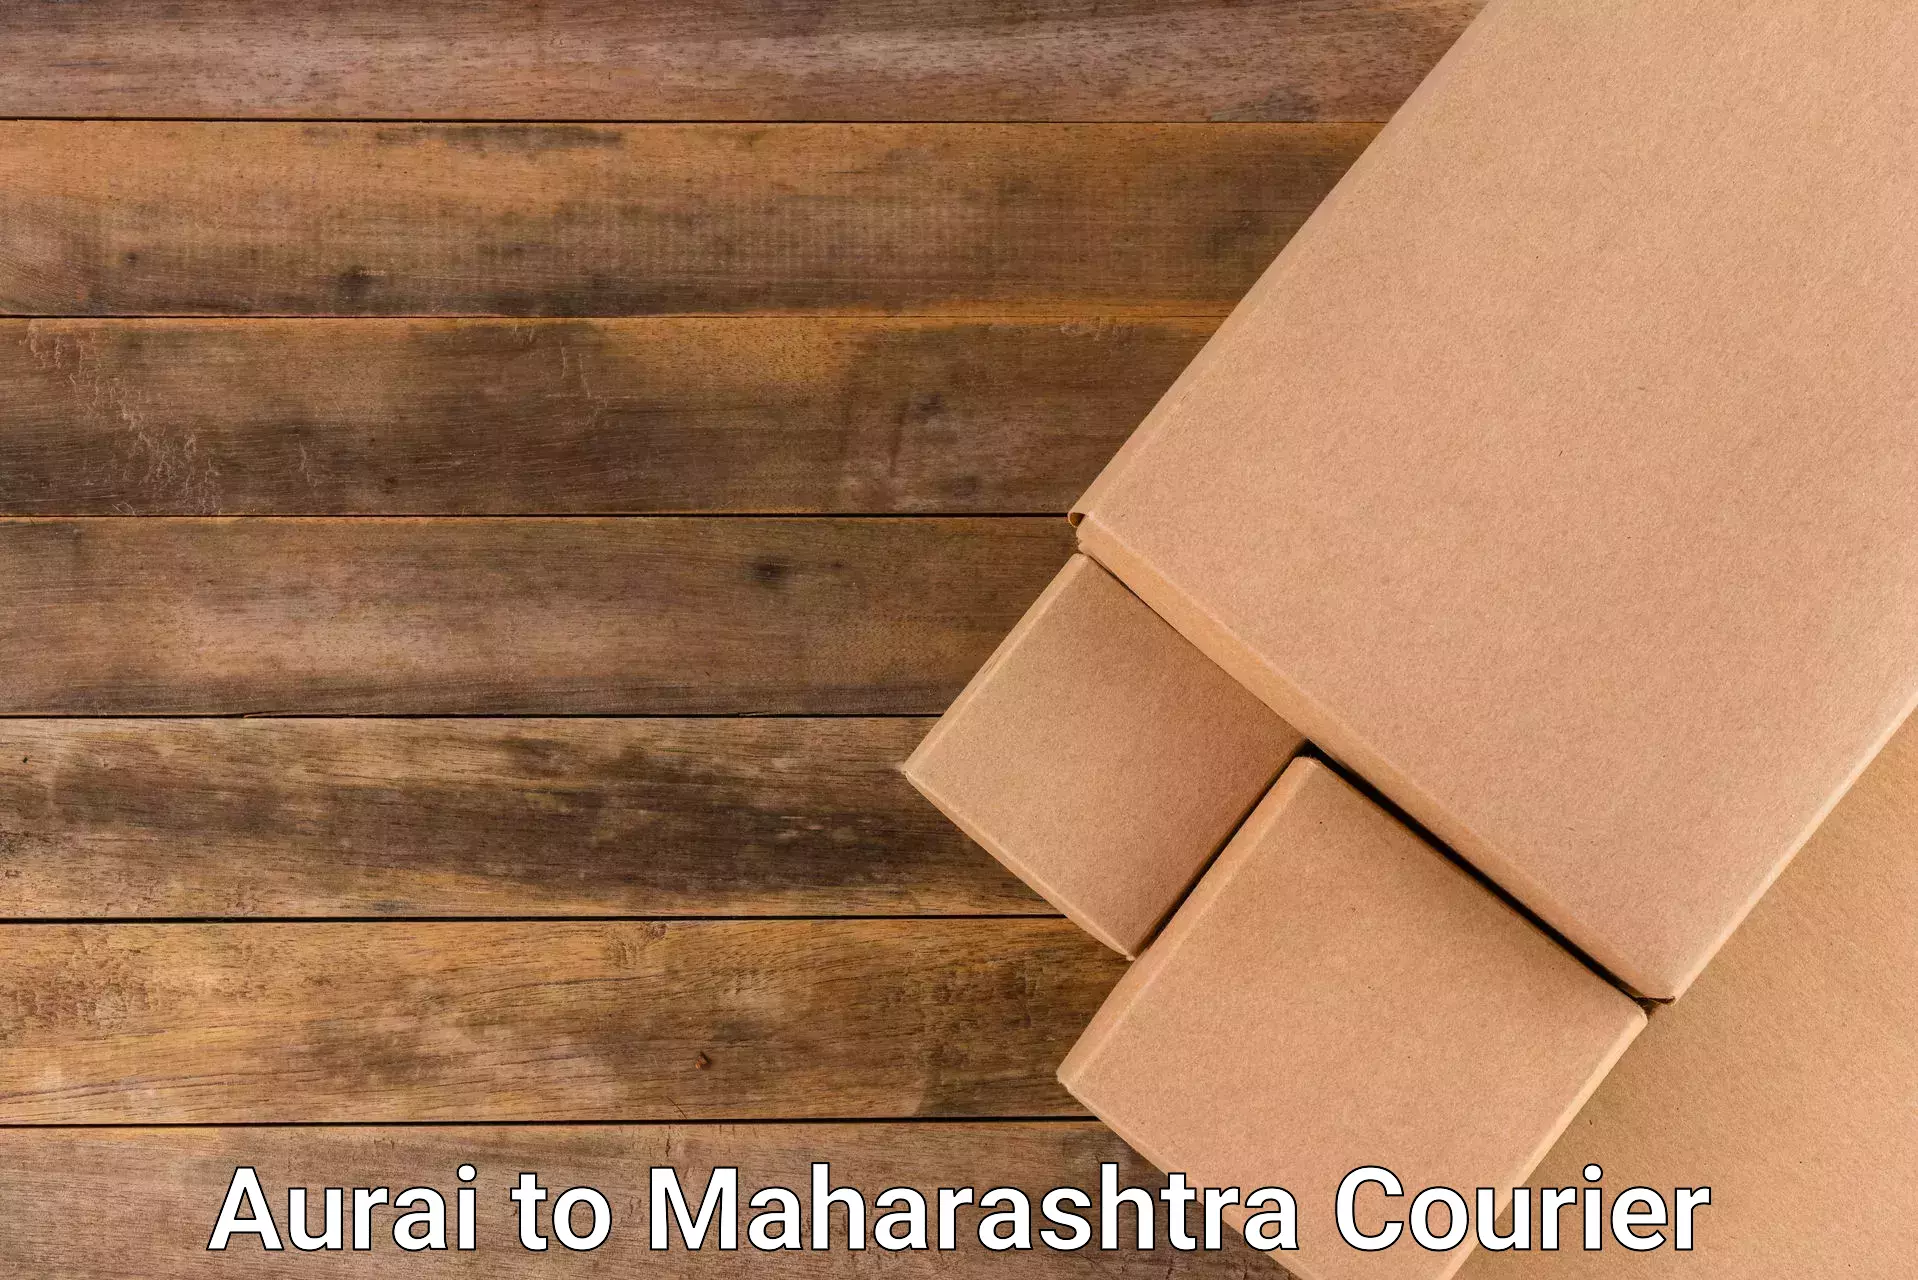 Efficient parcel service Aurai to Maharashtra